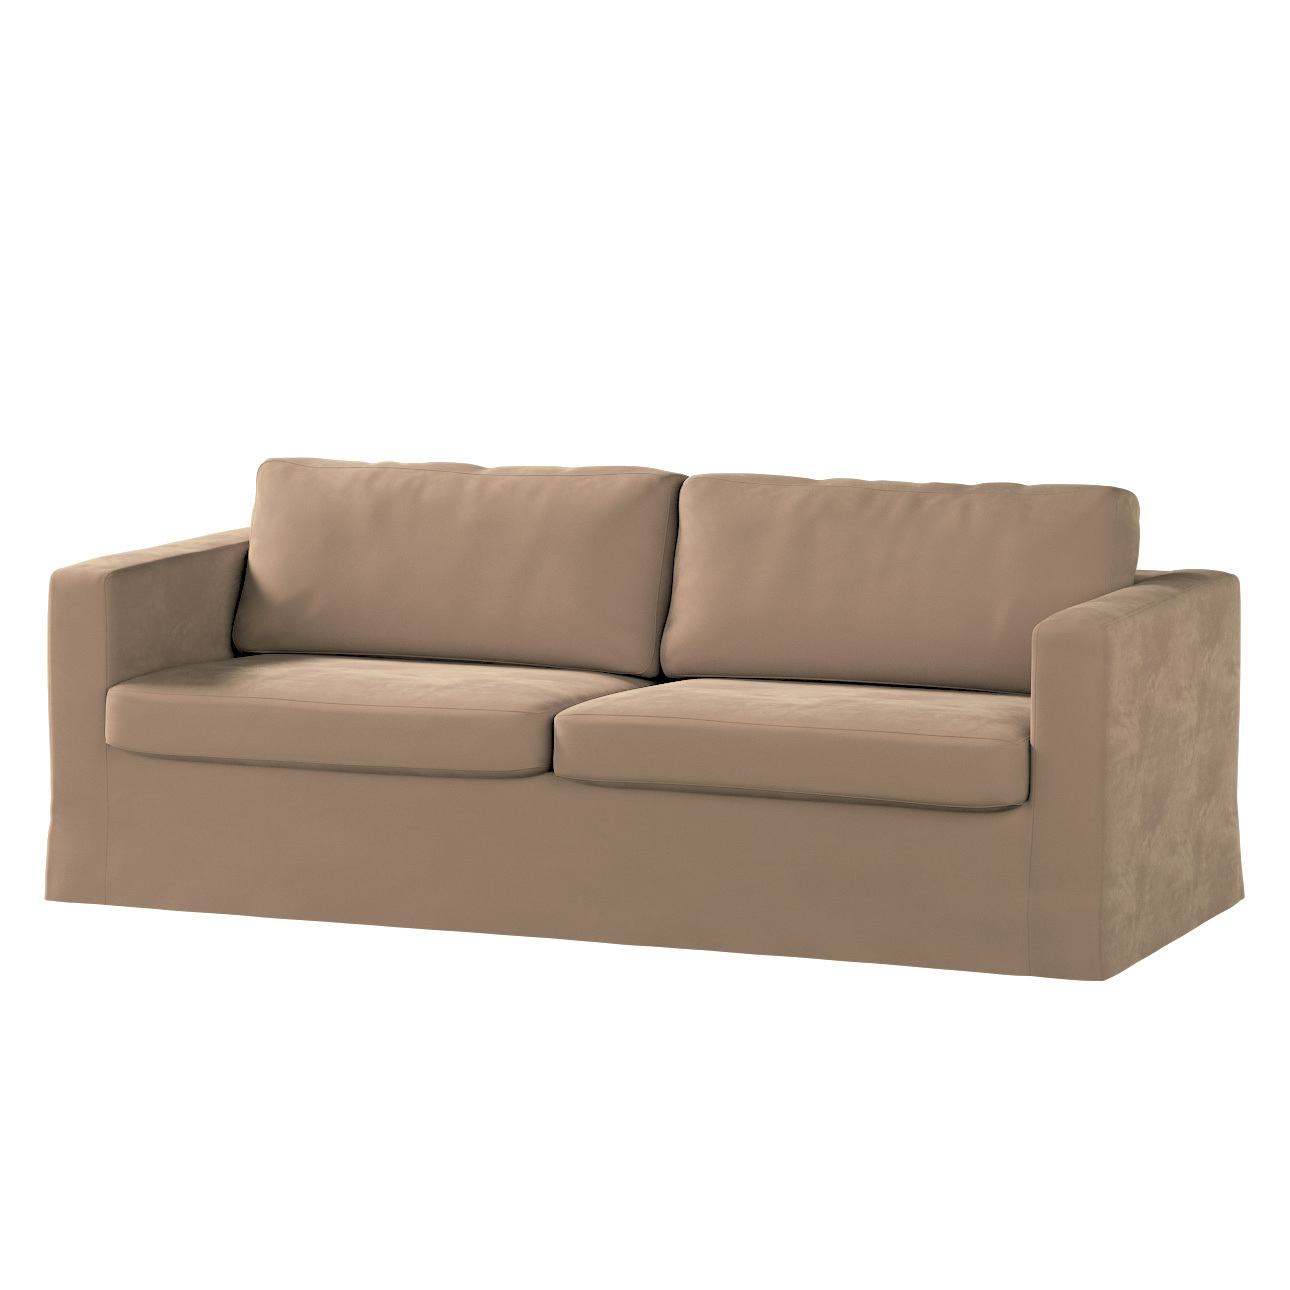 Bezug für Karlstad 3-Sitzer Sofa nicht ausklappbar, lang, beige, Bezug für günstig online kaufen